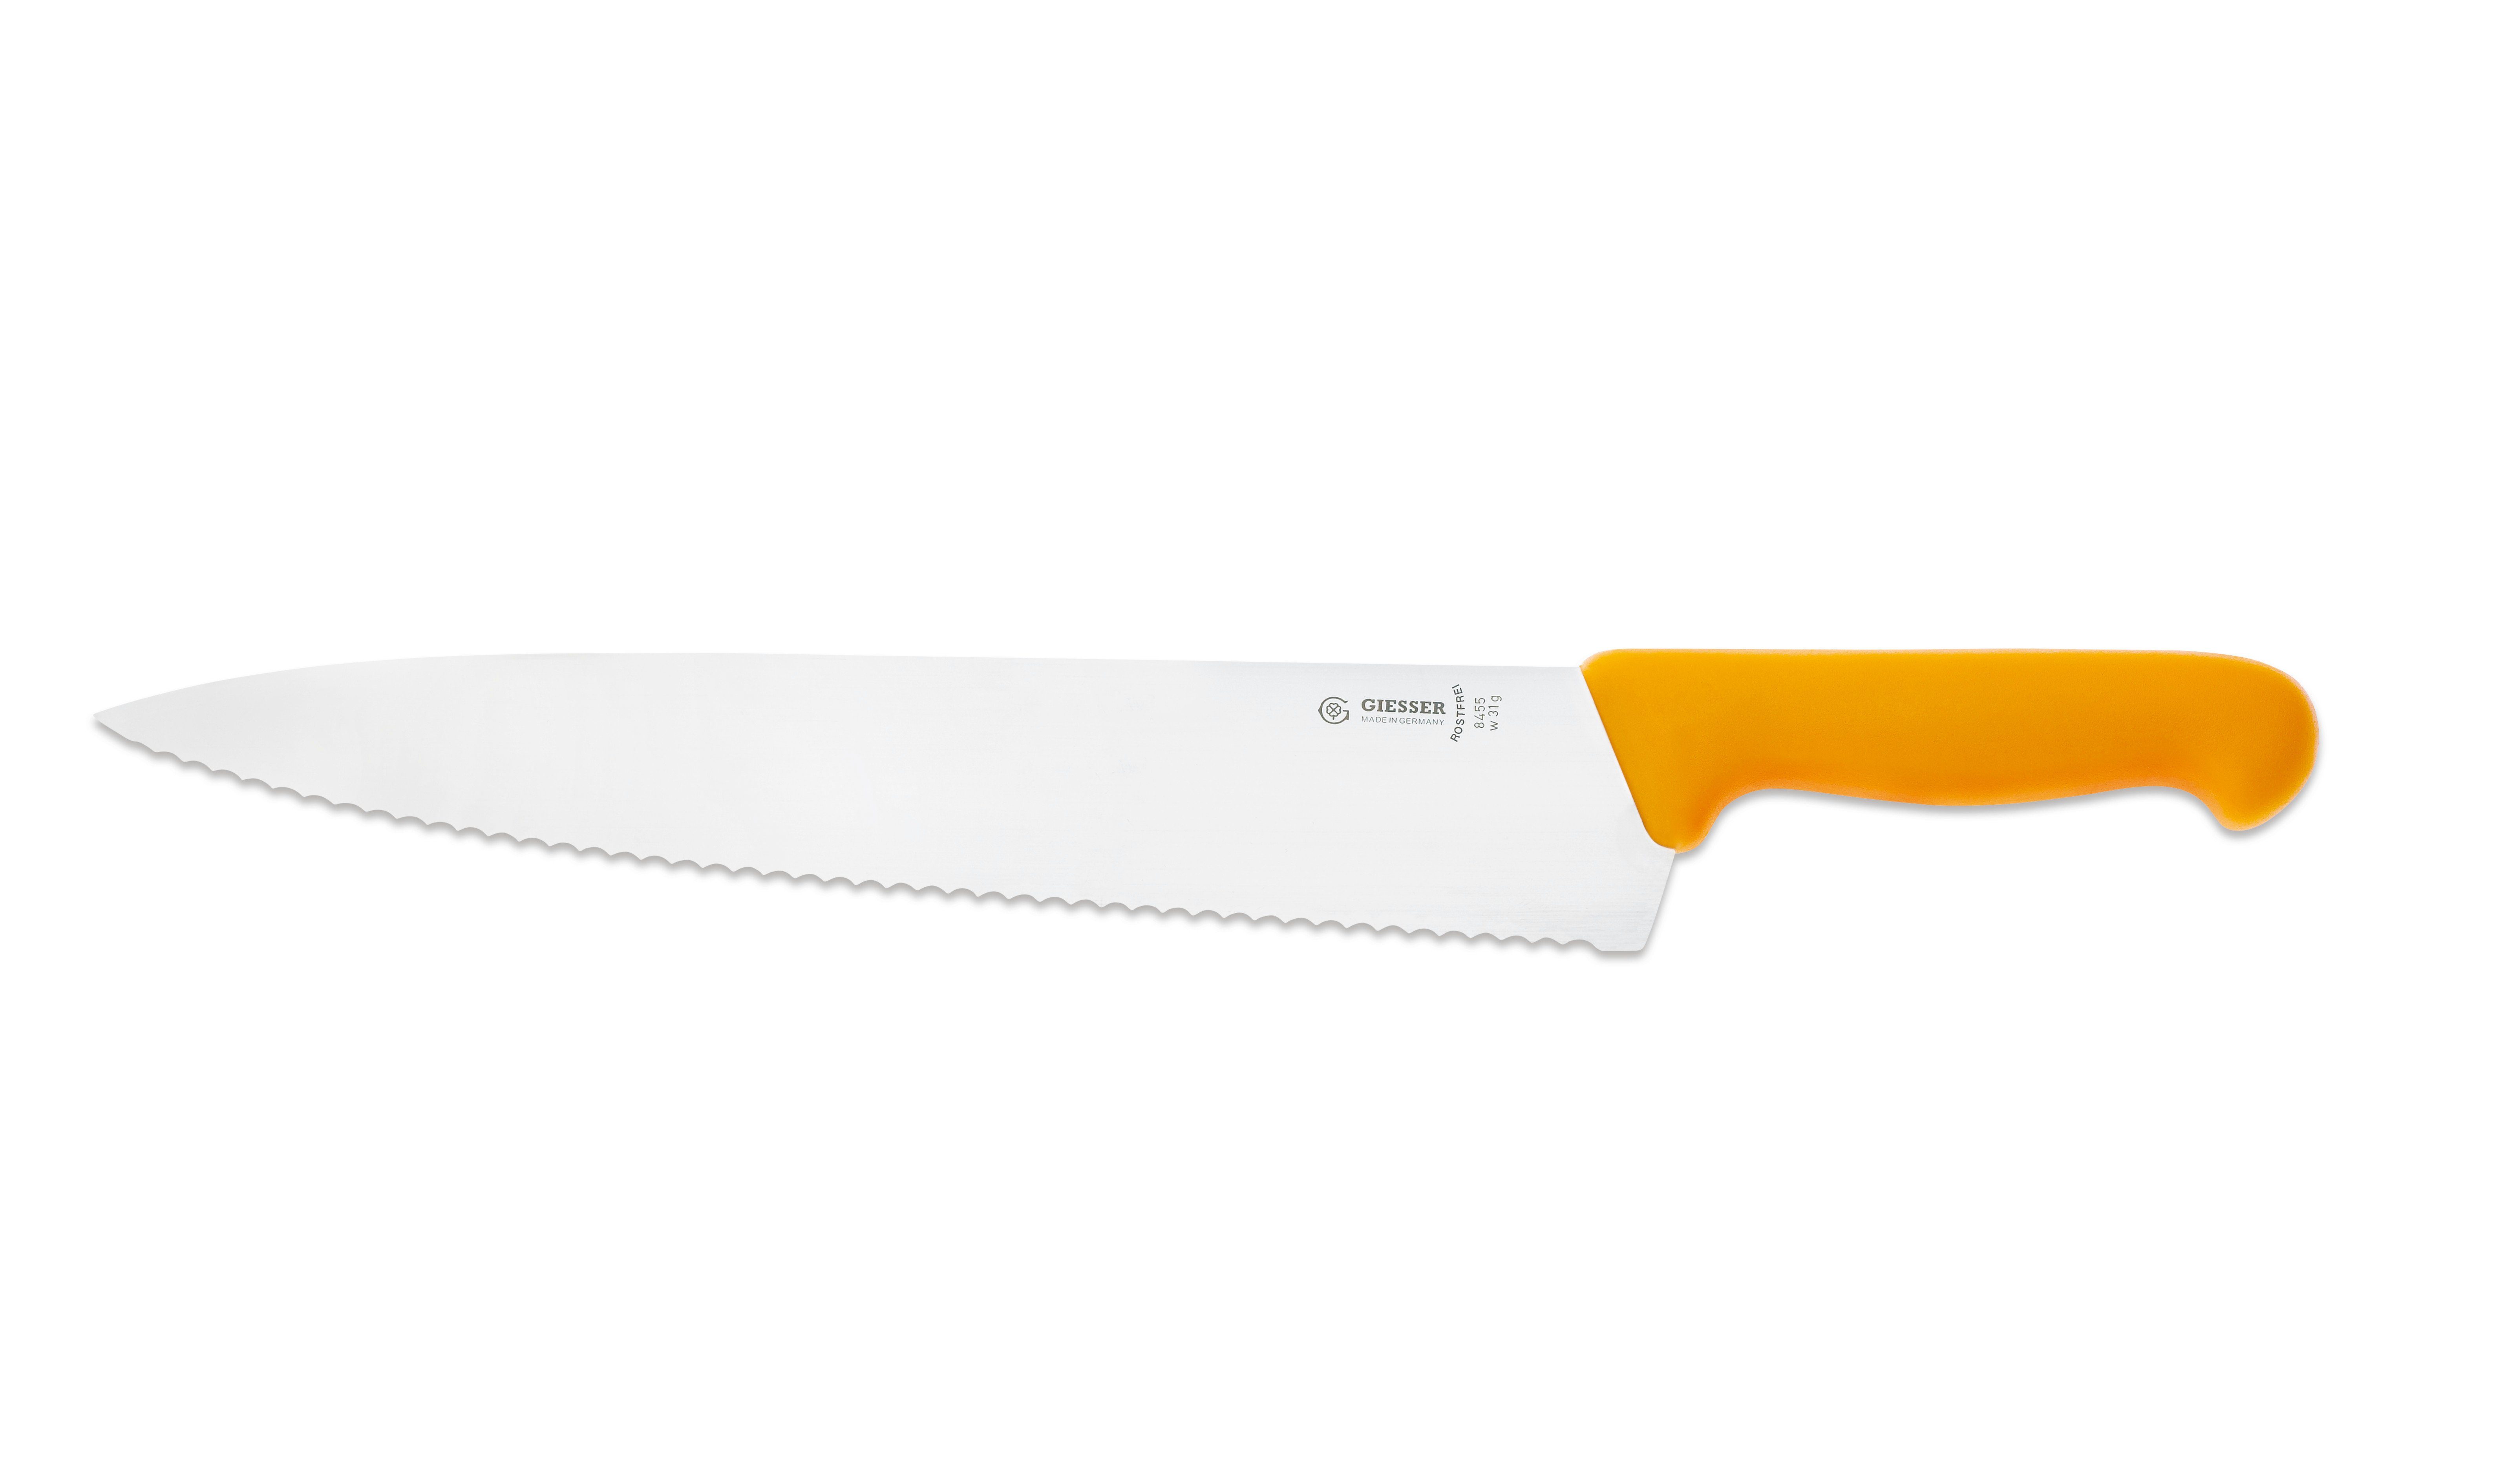 Giesser Messer Kochmesser Küchenmesser breit Rostfrei, für 8455, scharf, Handabzug, Küche gelb-Welle Form, breite jede Ideal